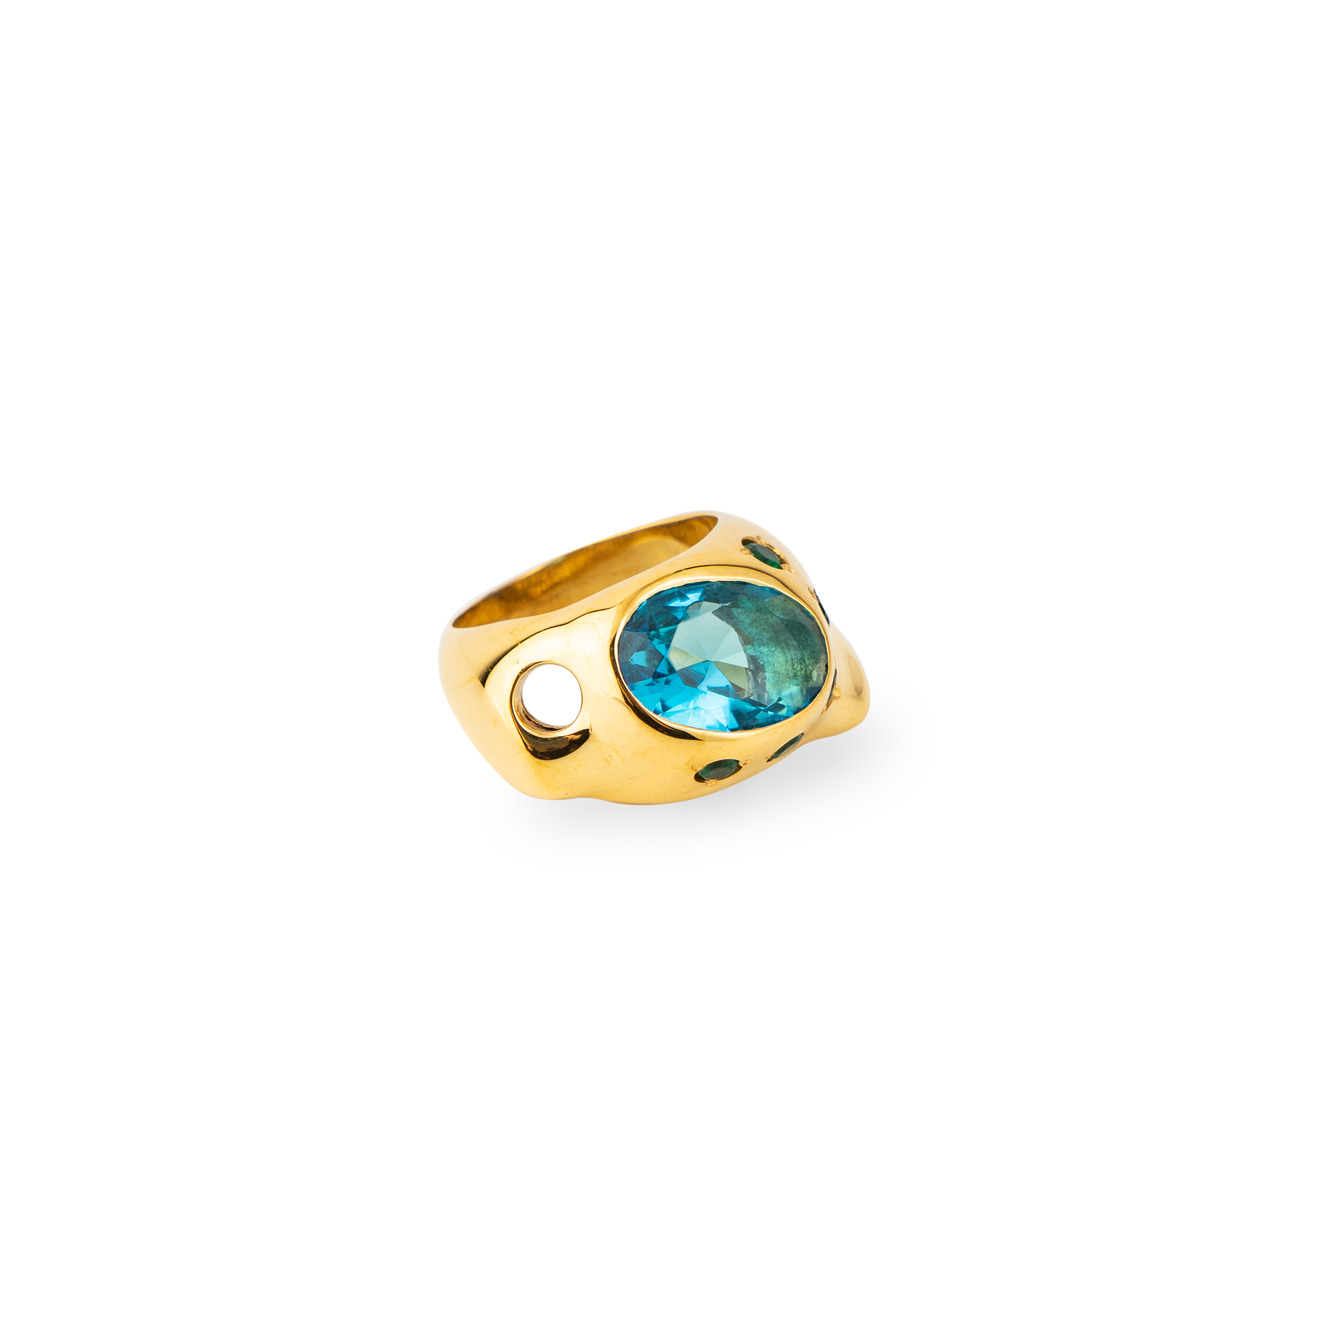 Janashia Золотистое кольцо Ava волнообразной формы со вставками из зеленых и голубого кристалла цена и фото